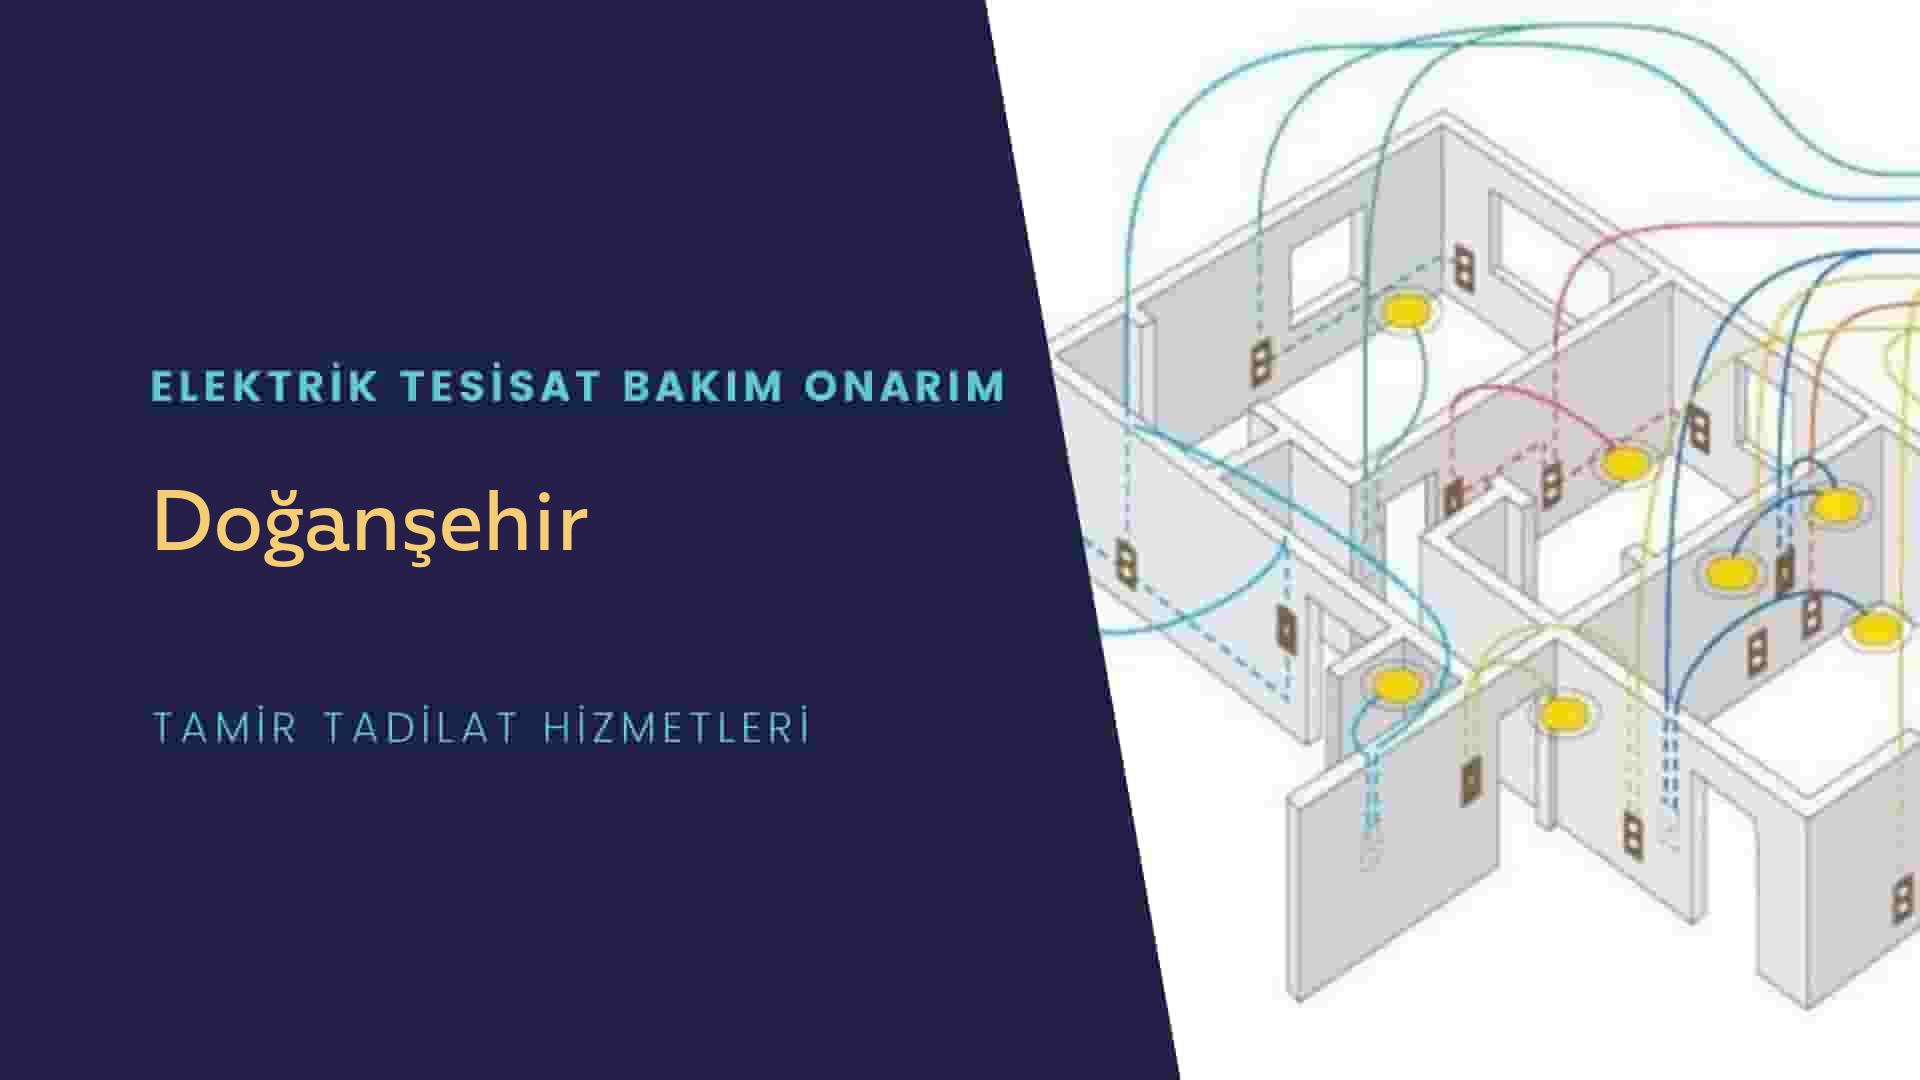 Doğanşehir'de elektrik tesisatı ustalarımı arıyorsunuz doğru adrestenizi Doğanşehir elektrik tesisatı ustalarımız 7/24 sizlere hizmet vermekten mutluluk duyar.